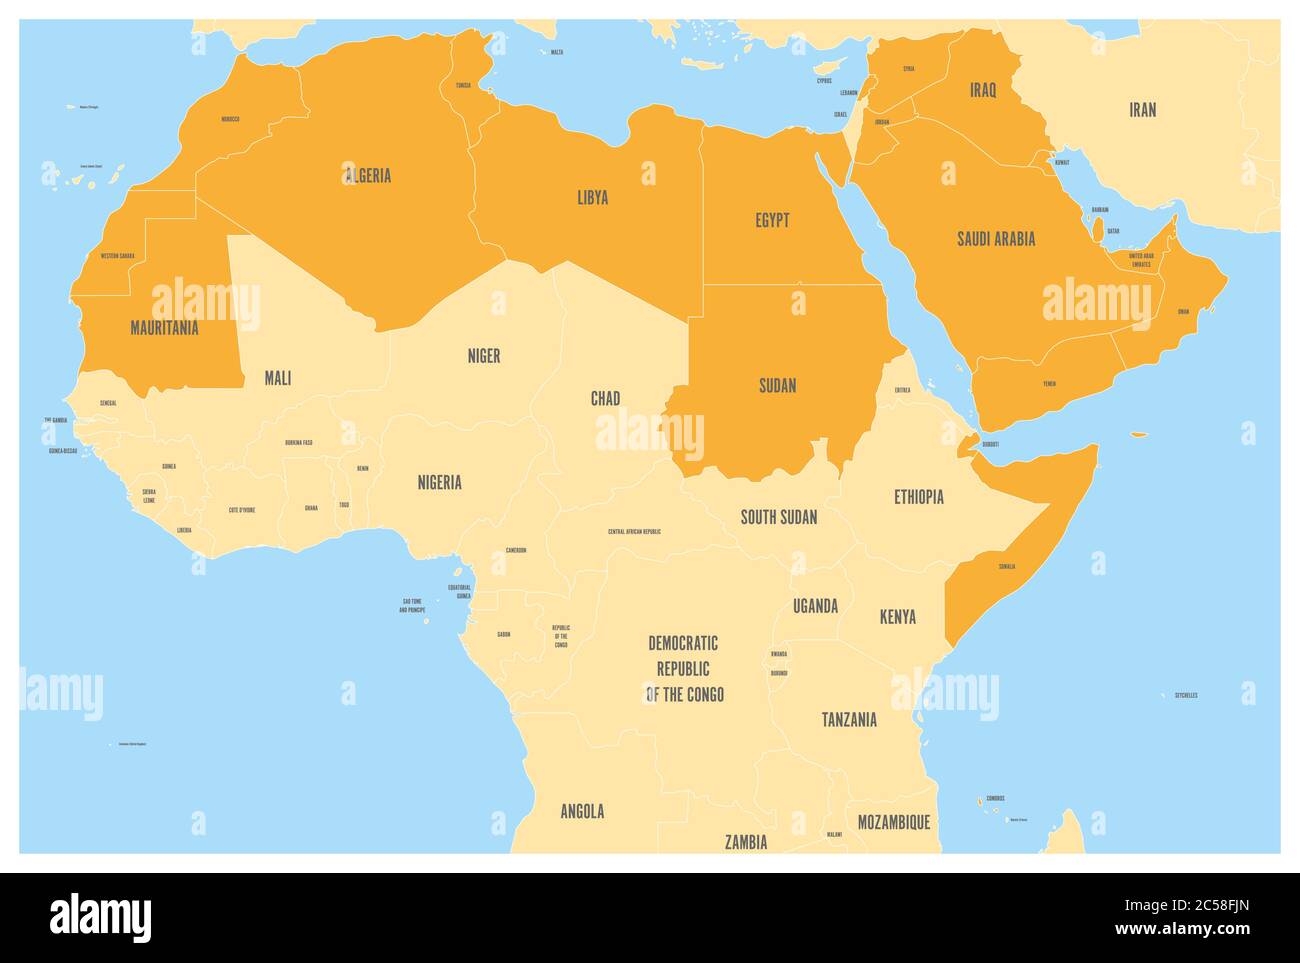 Mappa politica degli stati del mondo arabo con 22 paesi della Lega araba illuminati in arancione. Africa settentrionale e Medio Oriente. Mappa vettoriale con acqua blu e terre gialle. Illustrazione Vettoriale